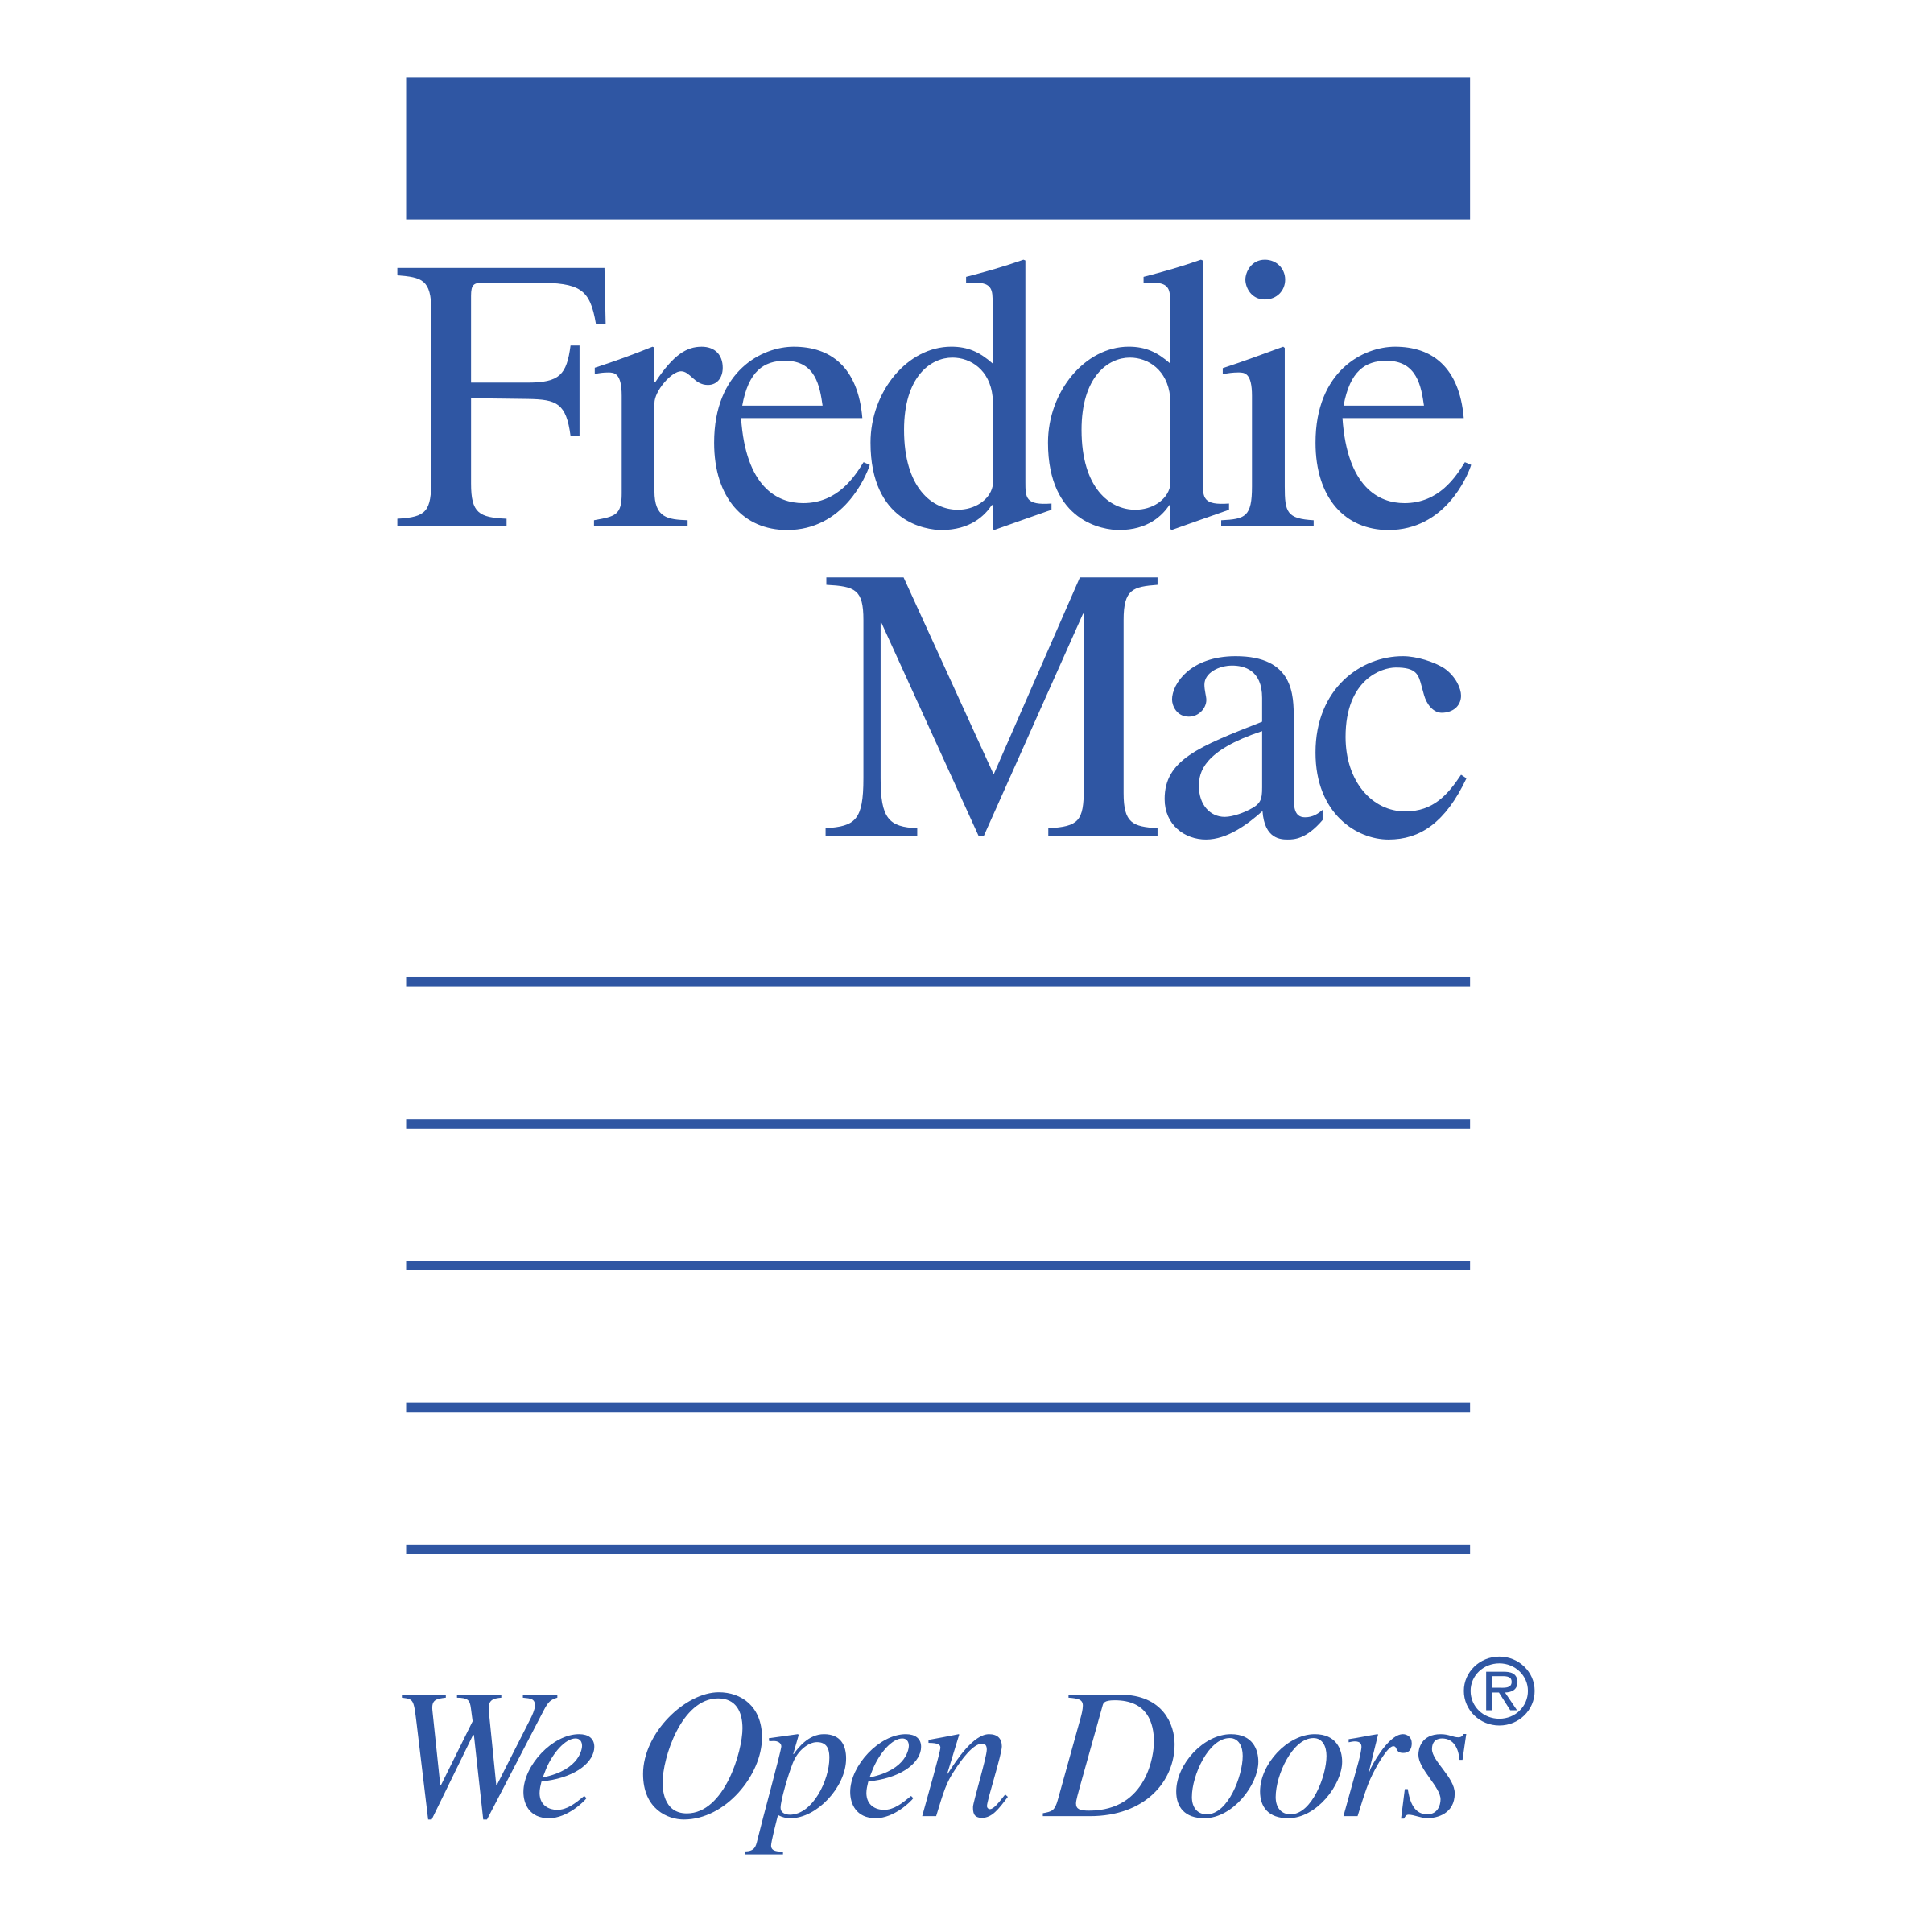 Freddie Logo Mac Free HD Image PNG Image